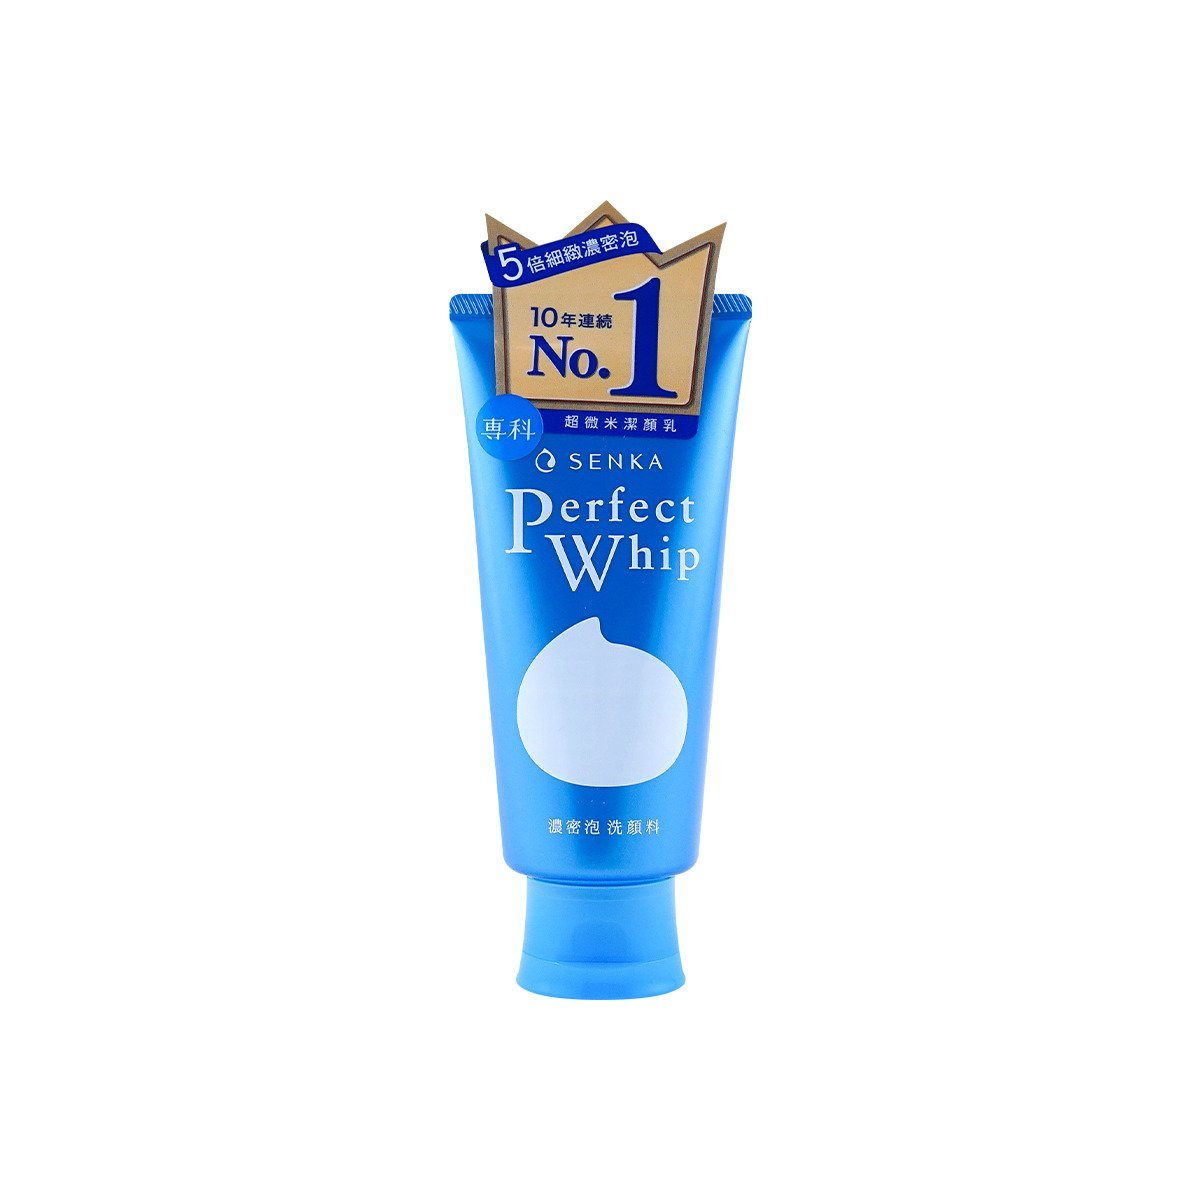 Shiseido Senka Perfect Whip Cleansing Foam 120g (Blue)